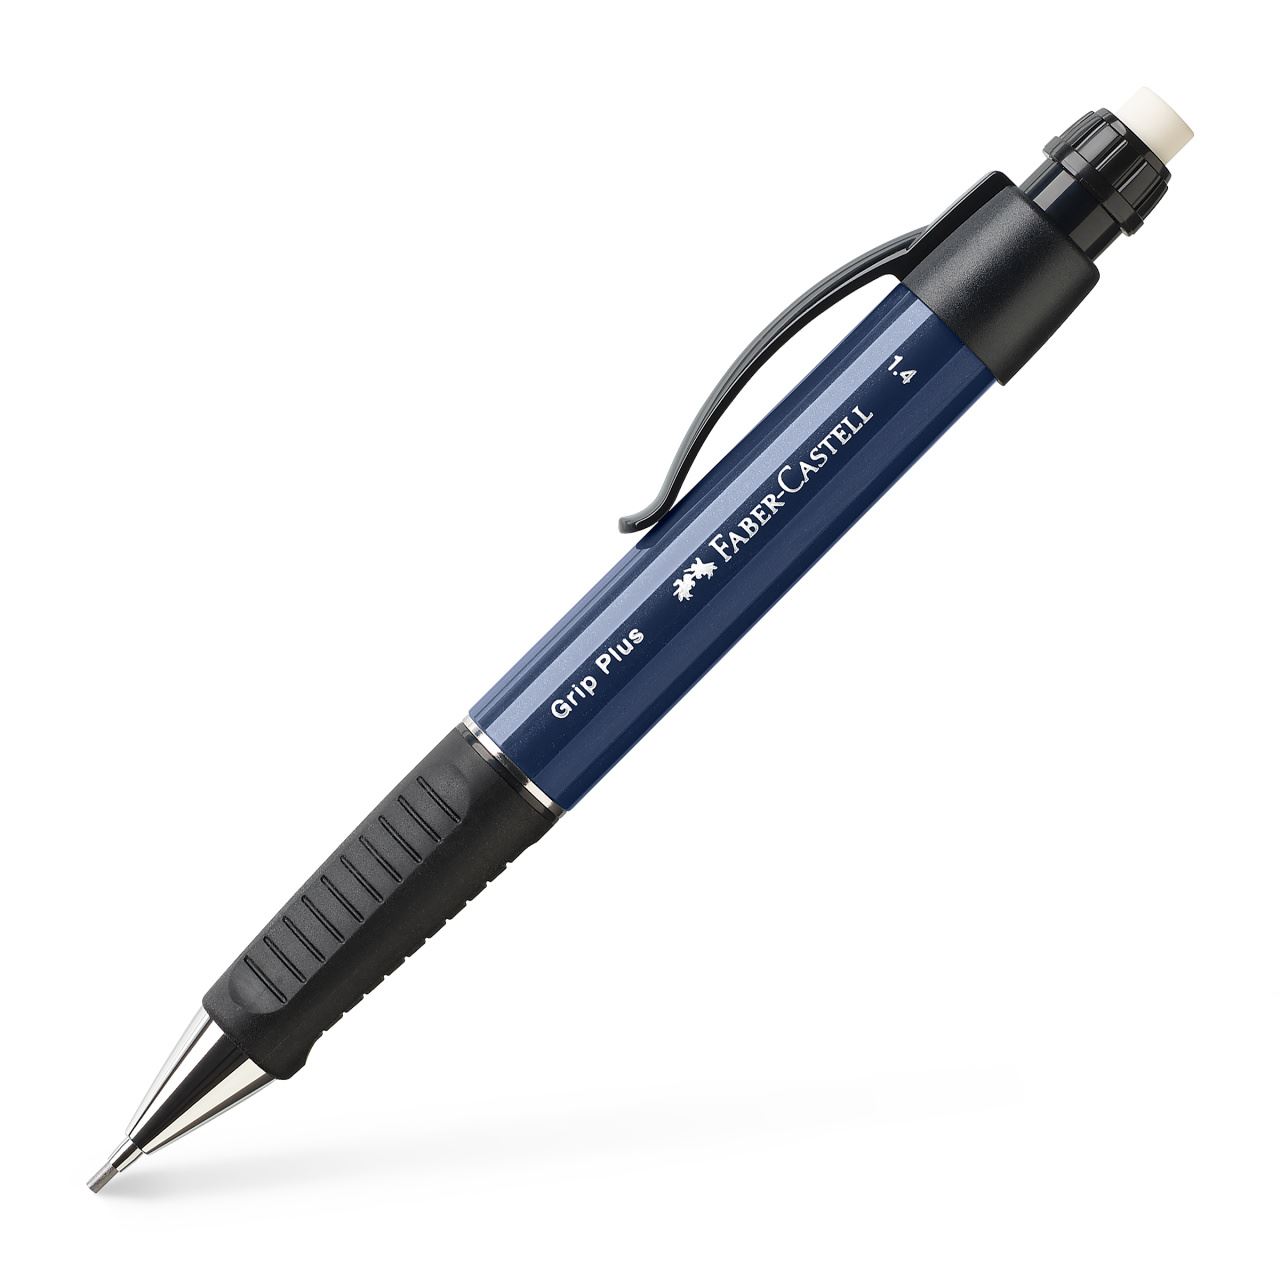 Faber-Castell - Mechanická tužka Grip Plus, modrá